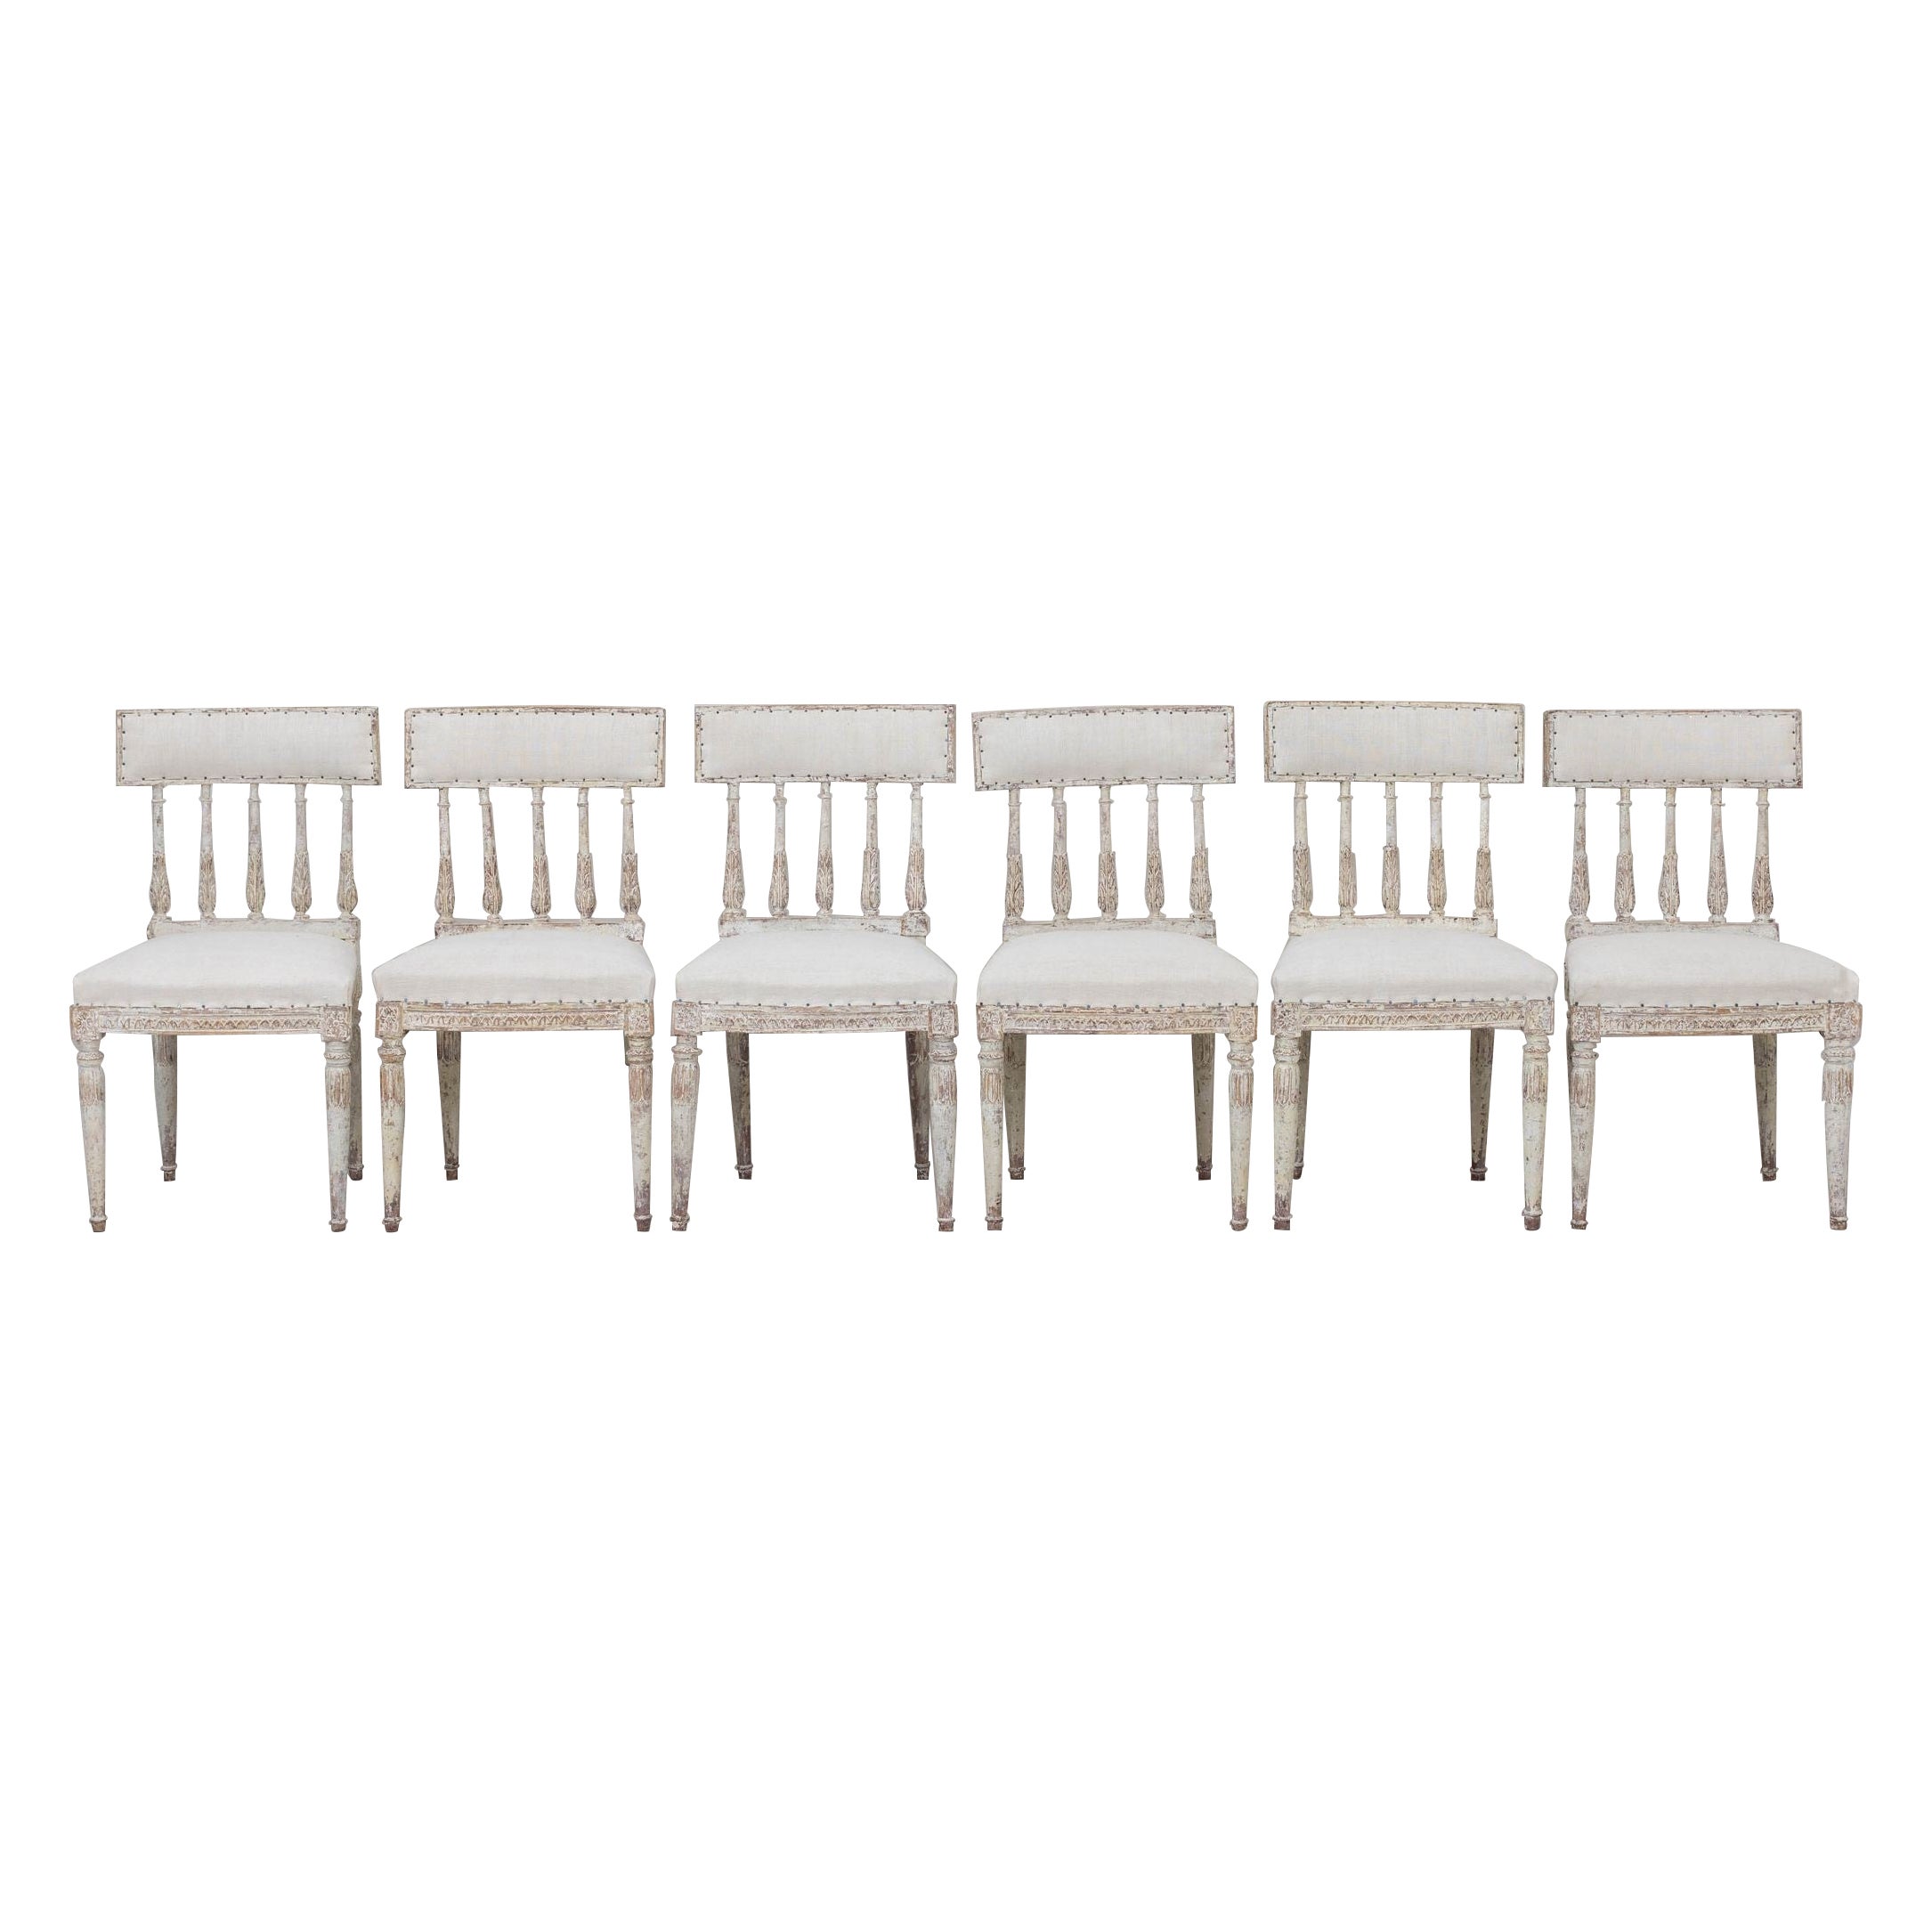 Un ensemble de six chaises suédoises de la période gustavienne dans leur peinture d'origine, nouvellement tapissées de lin ancien. Ces magnifiques chaises ont des dossiers courbes, inspirés des anciens modèles romains 